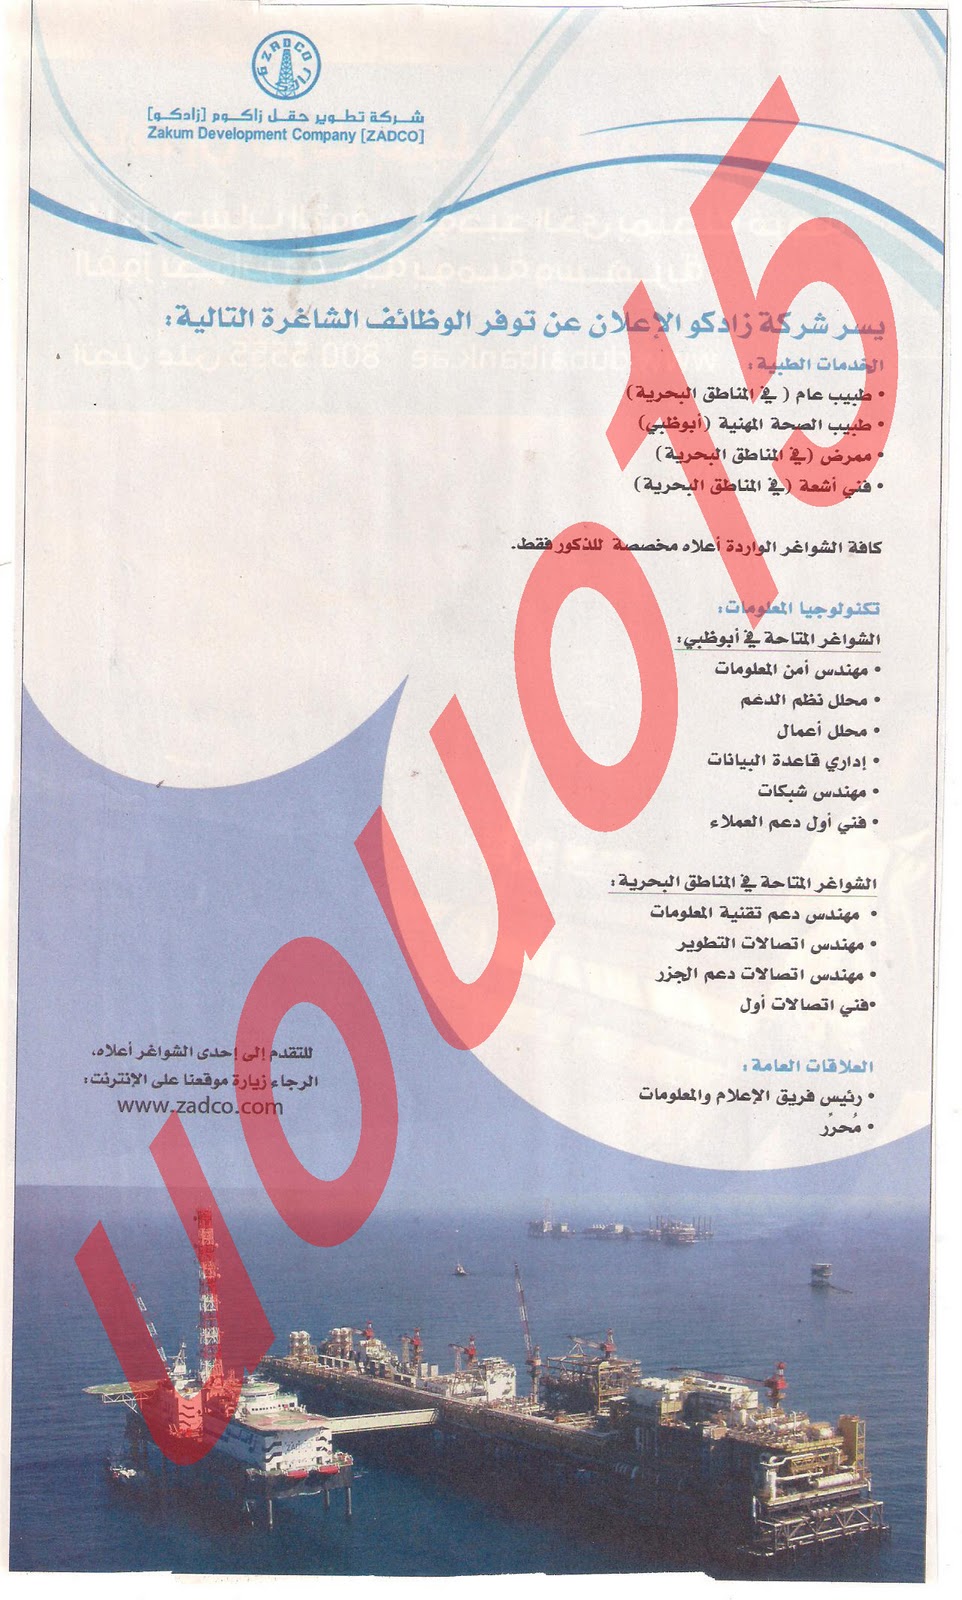  وظائف شاغرة من  جريدة الخليج الاربعاء 14\12\2011 , وظائف حكومية متميزة  Picture+004